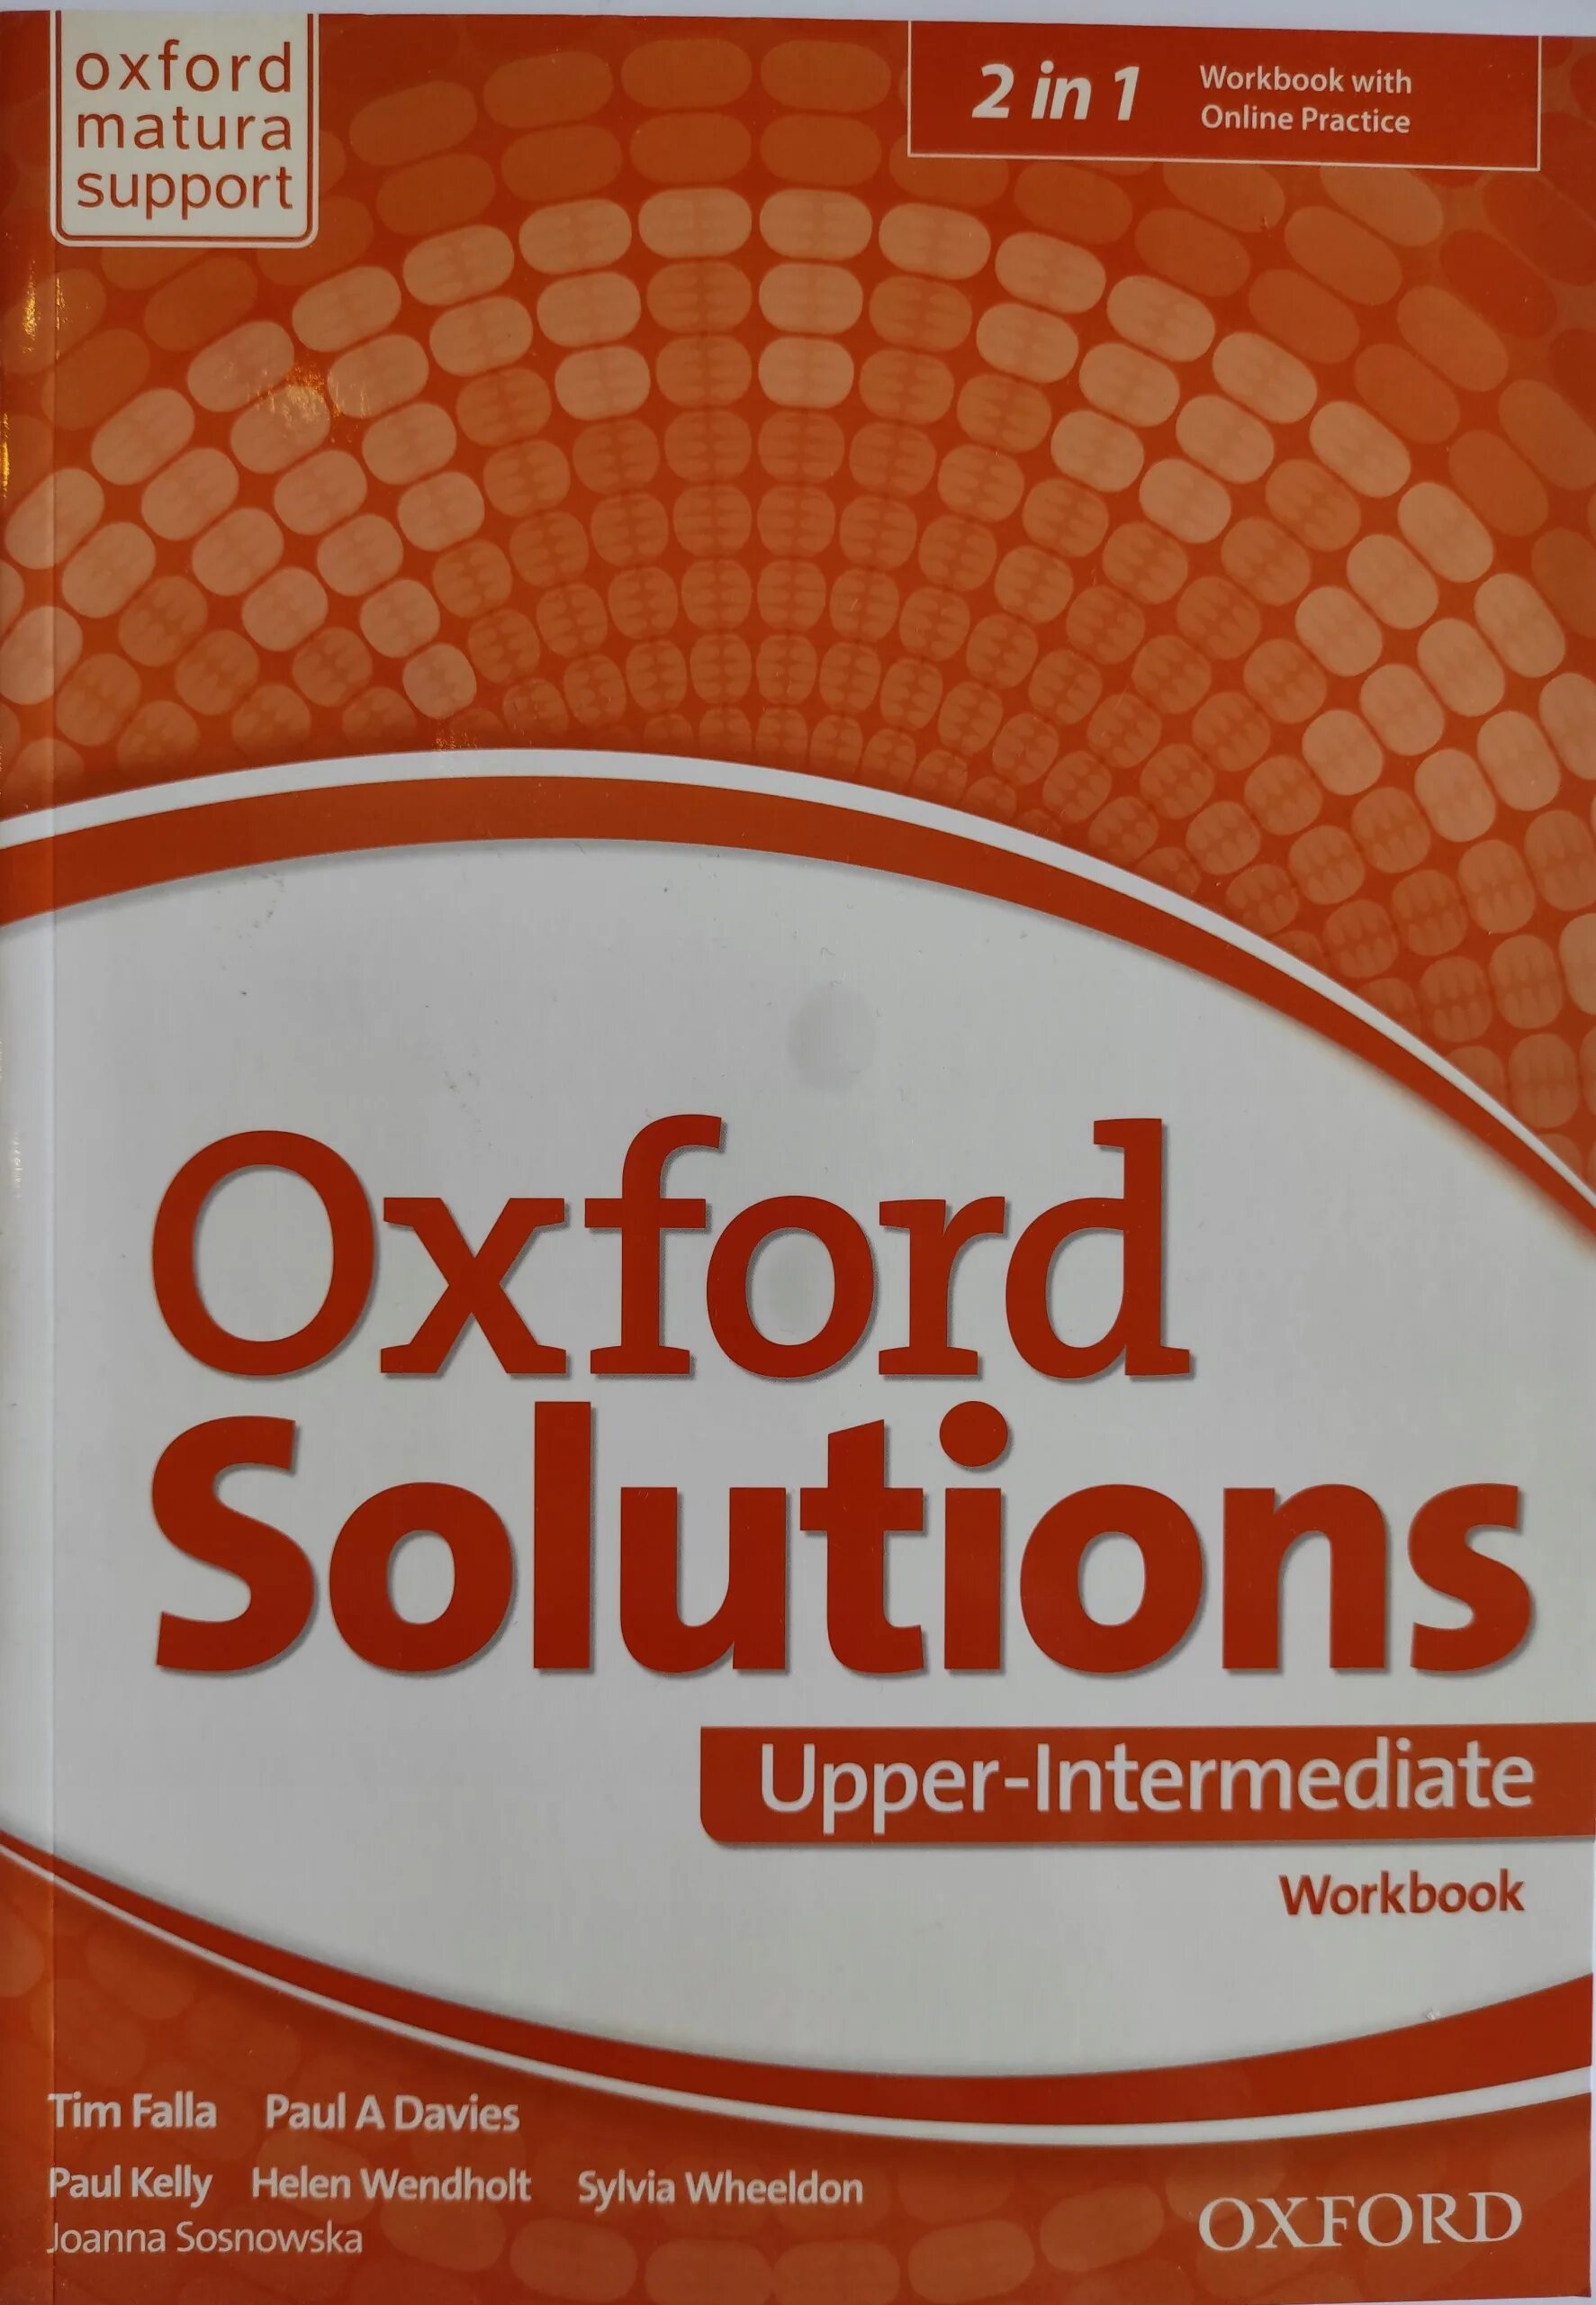 Solutions pre inter. Солюшенс pre Intermediate. Солюшнс пре интермедиат. Oxford solutions pre-Intermediate. Oxford solutions Intermediate.